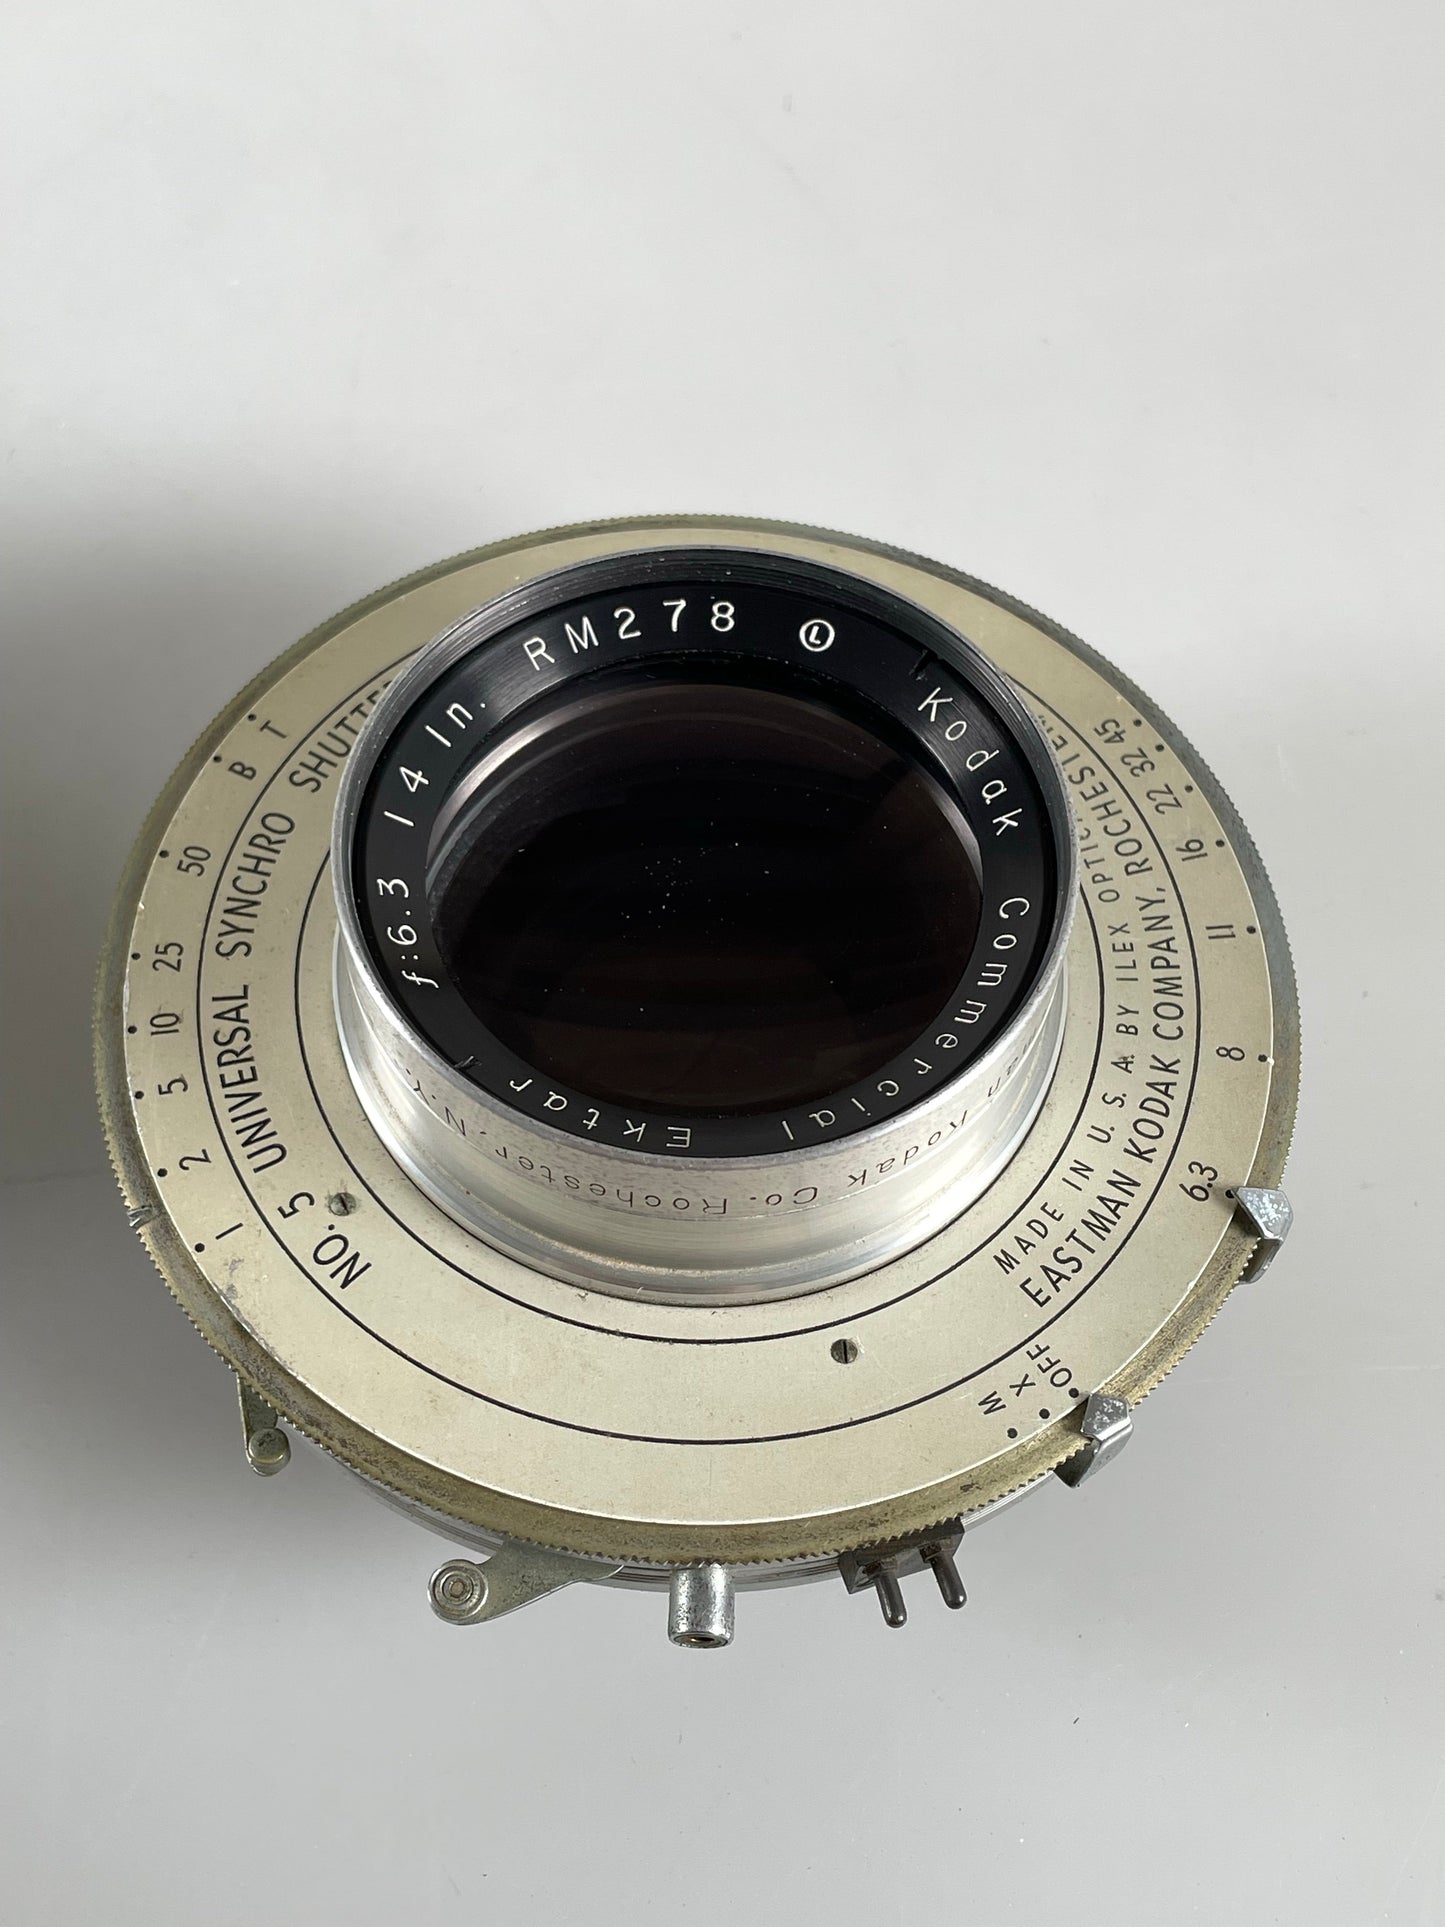 Kodak Commercial Ektar 14" inch [355mm] F6.3 Lens in universal #5 Shutter lens